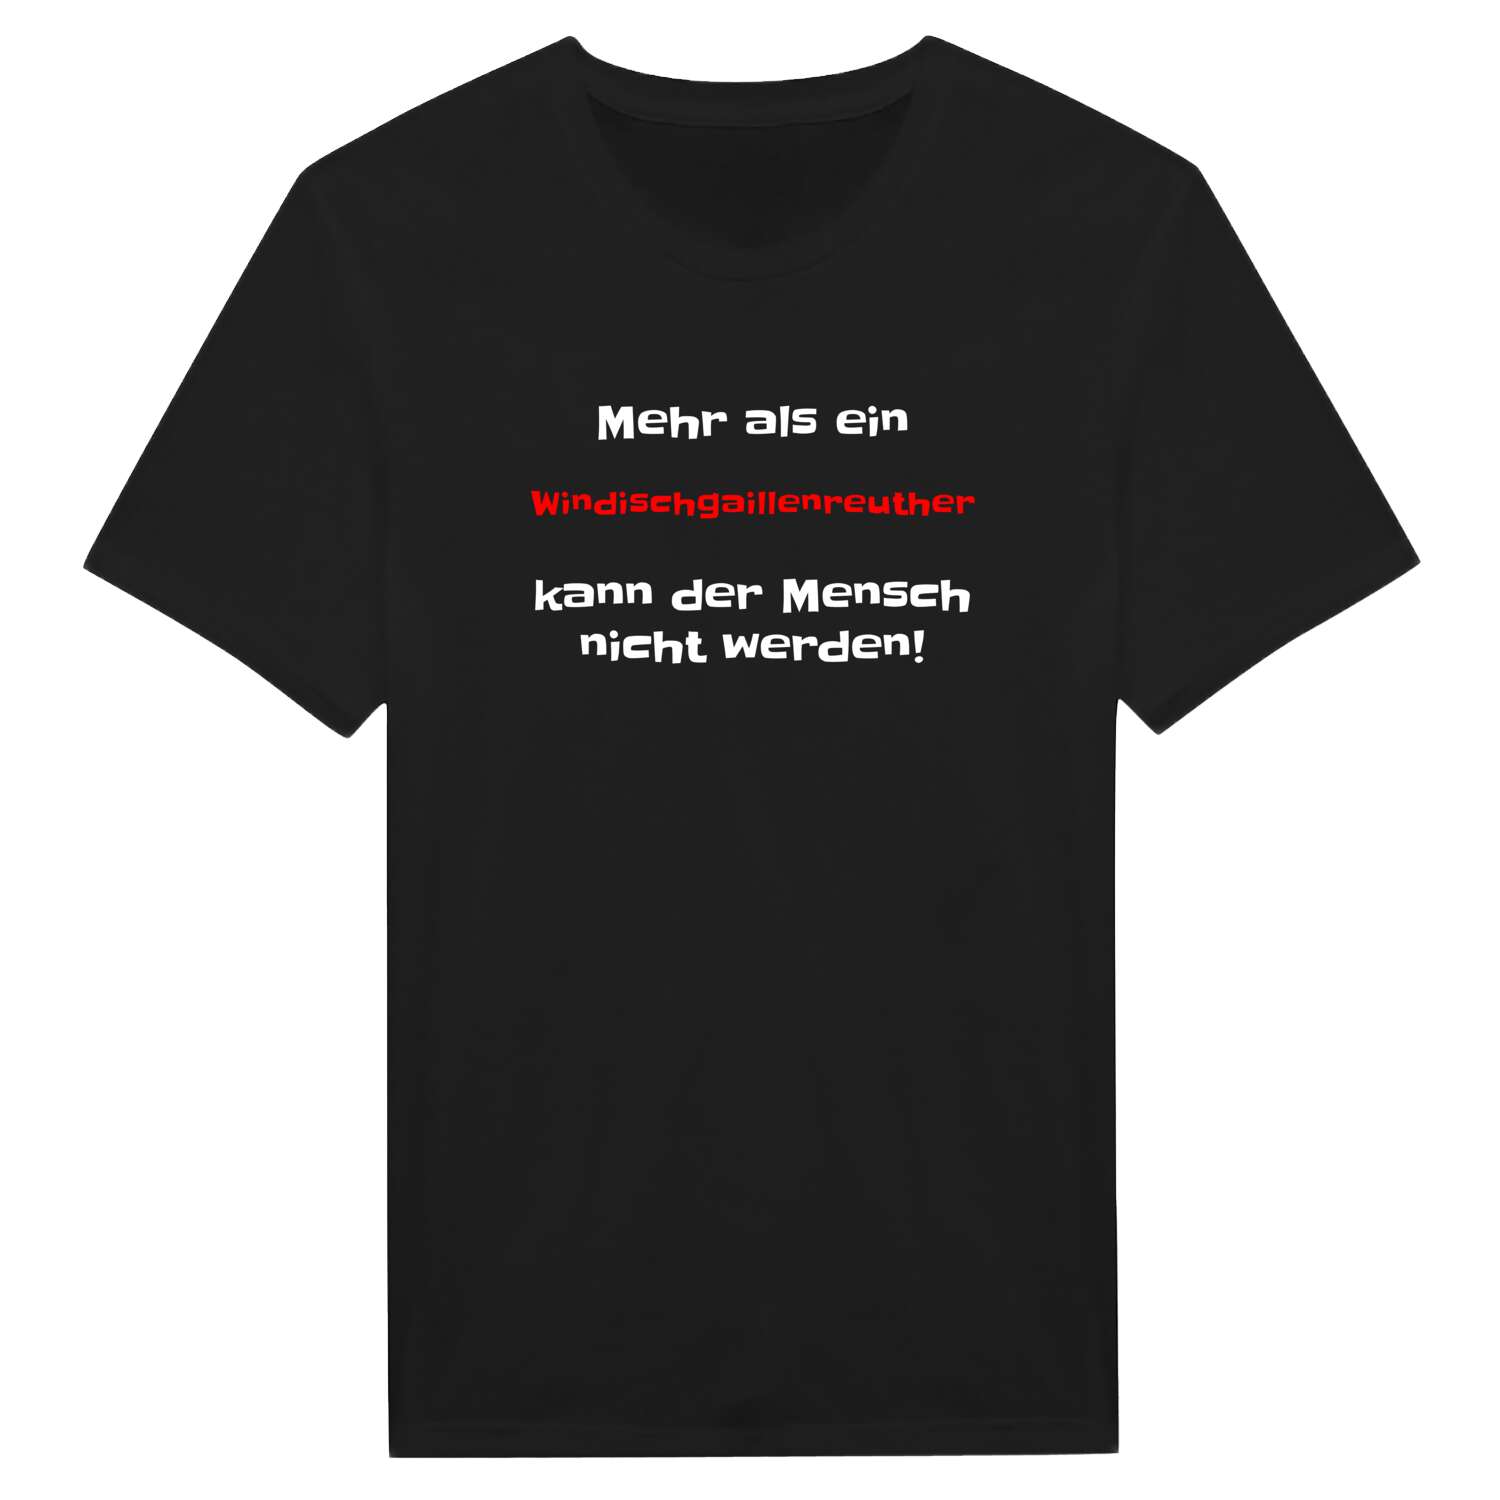 Windischgaillenreuth T-Shirt »Mehr als ein«